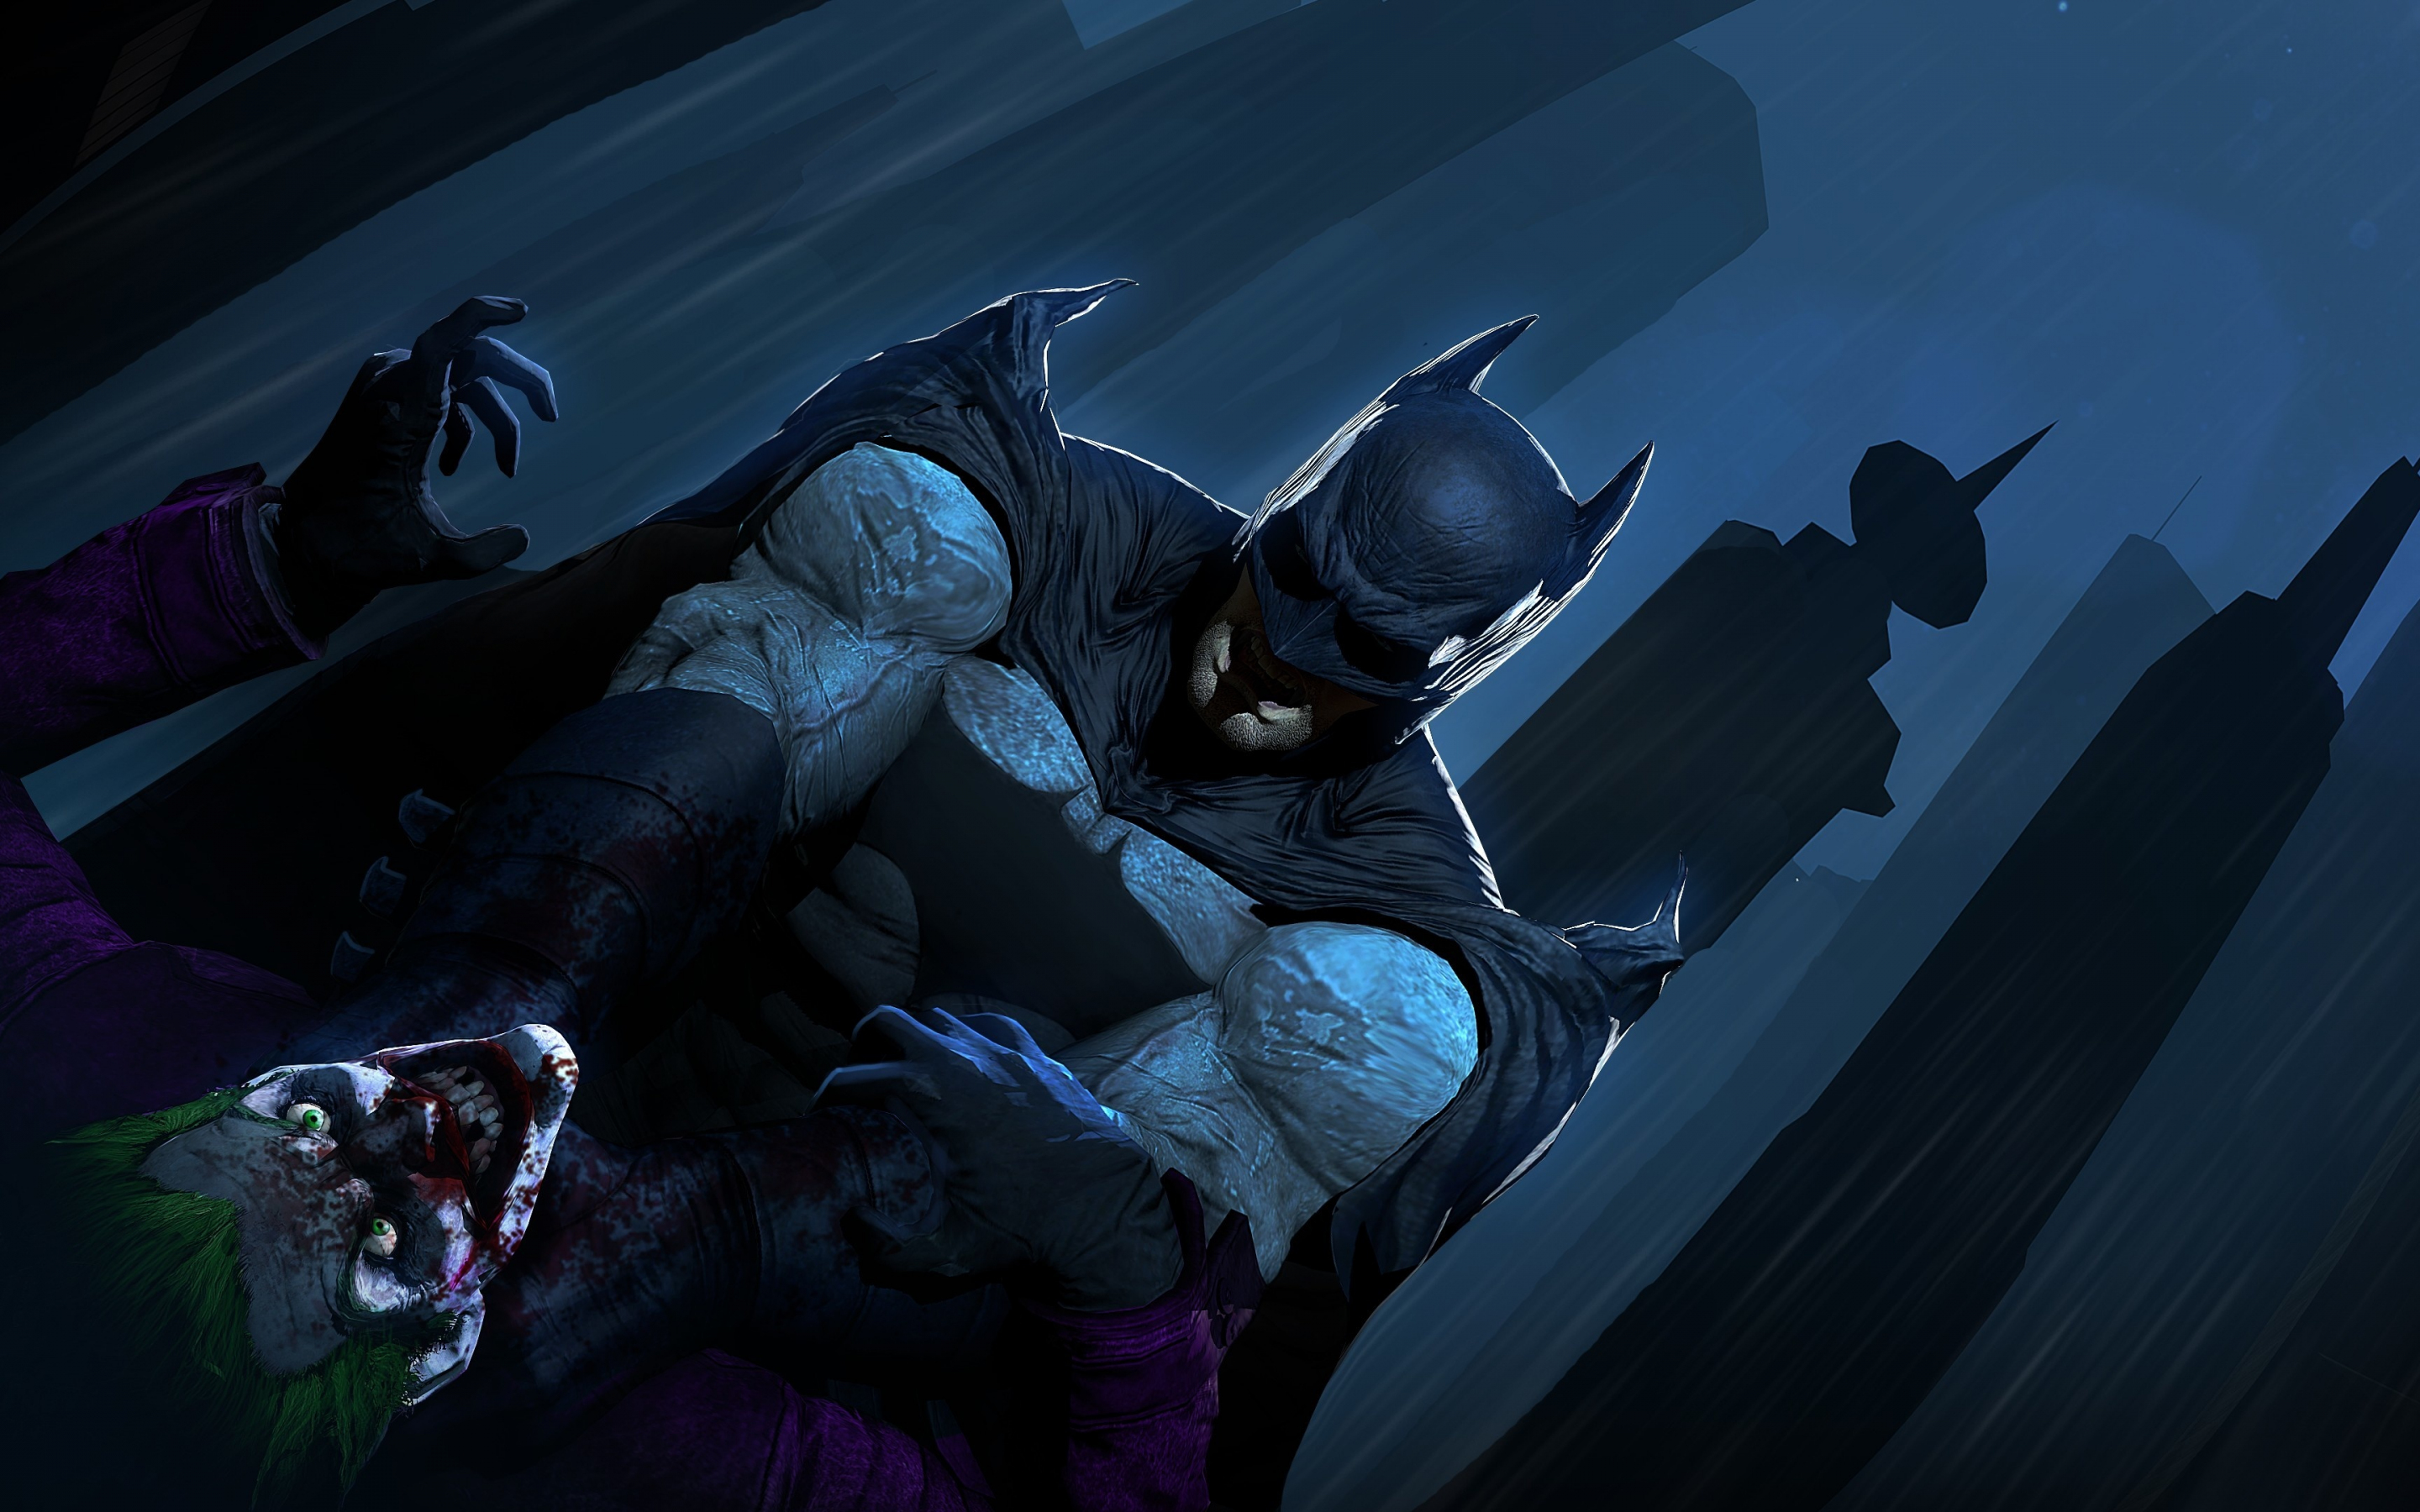 Joker vs batman, dc comics, artwork, 2880x1800 wallpaper